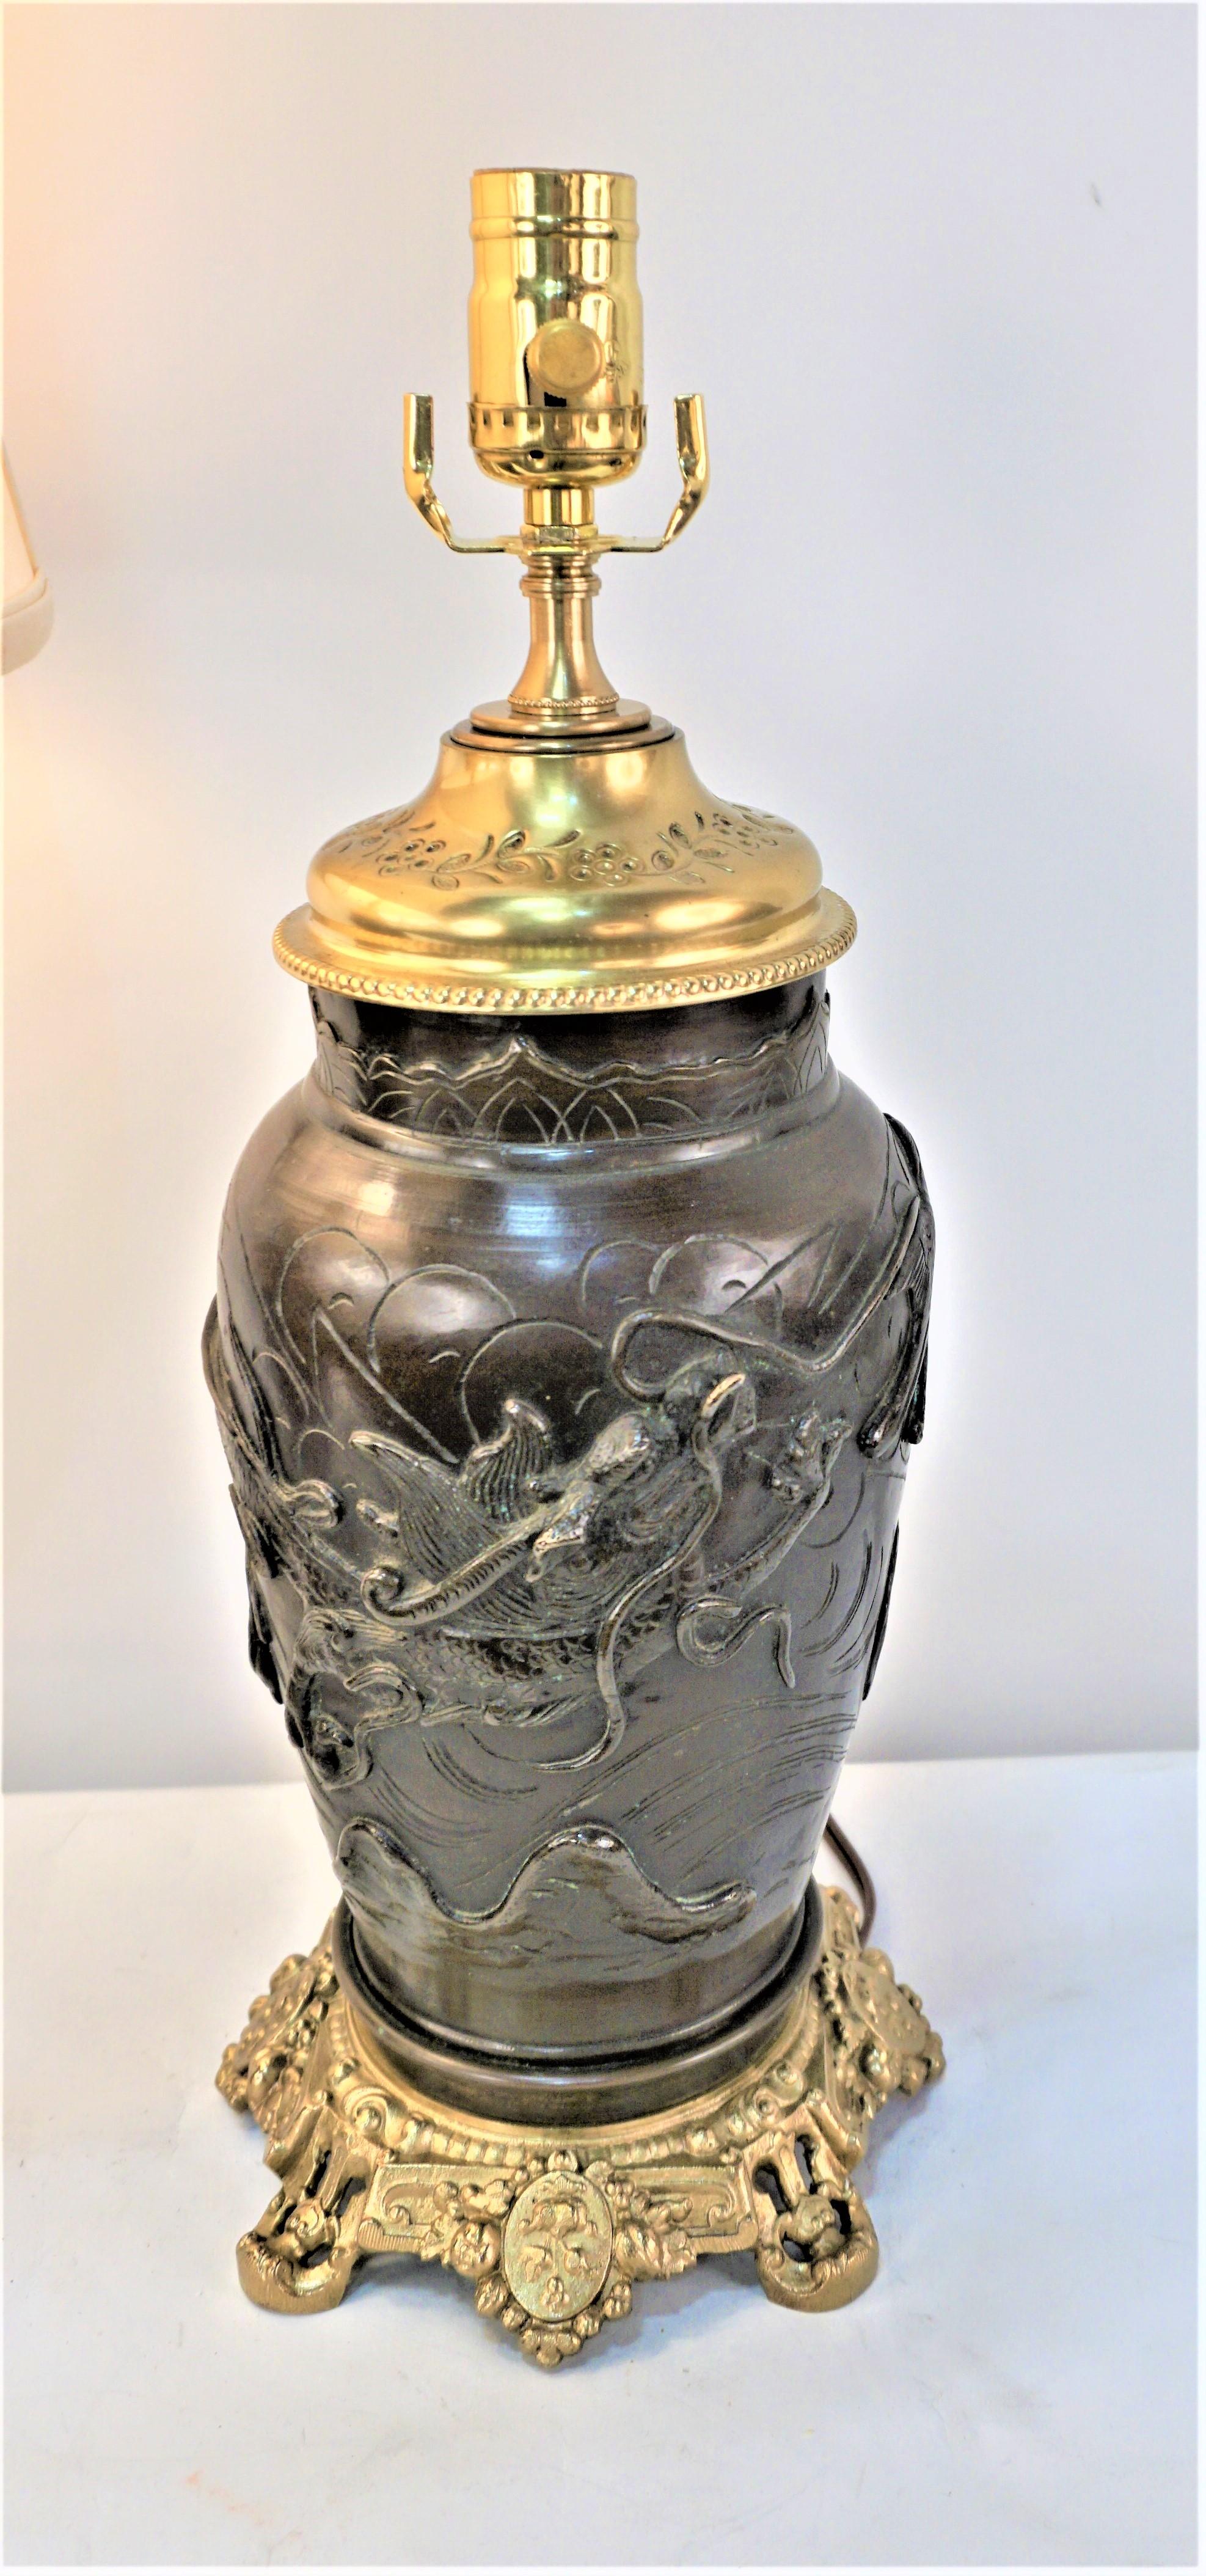 Paire de lampes à huile en bronze du 19e siècle qui ont été électrifiées professionnellement avec une douille à trois voies et équipées d'abat-jour en soie.